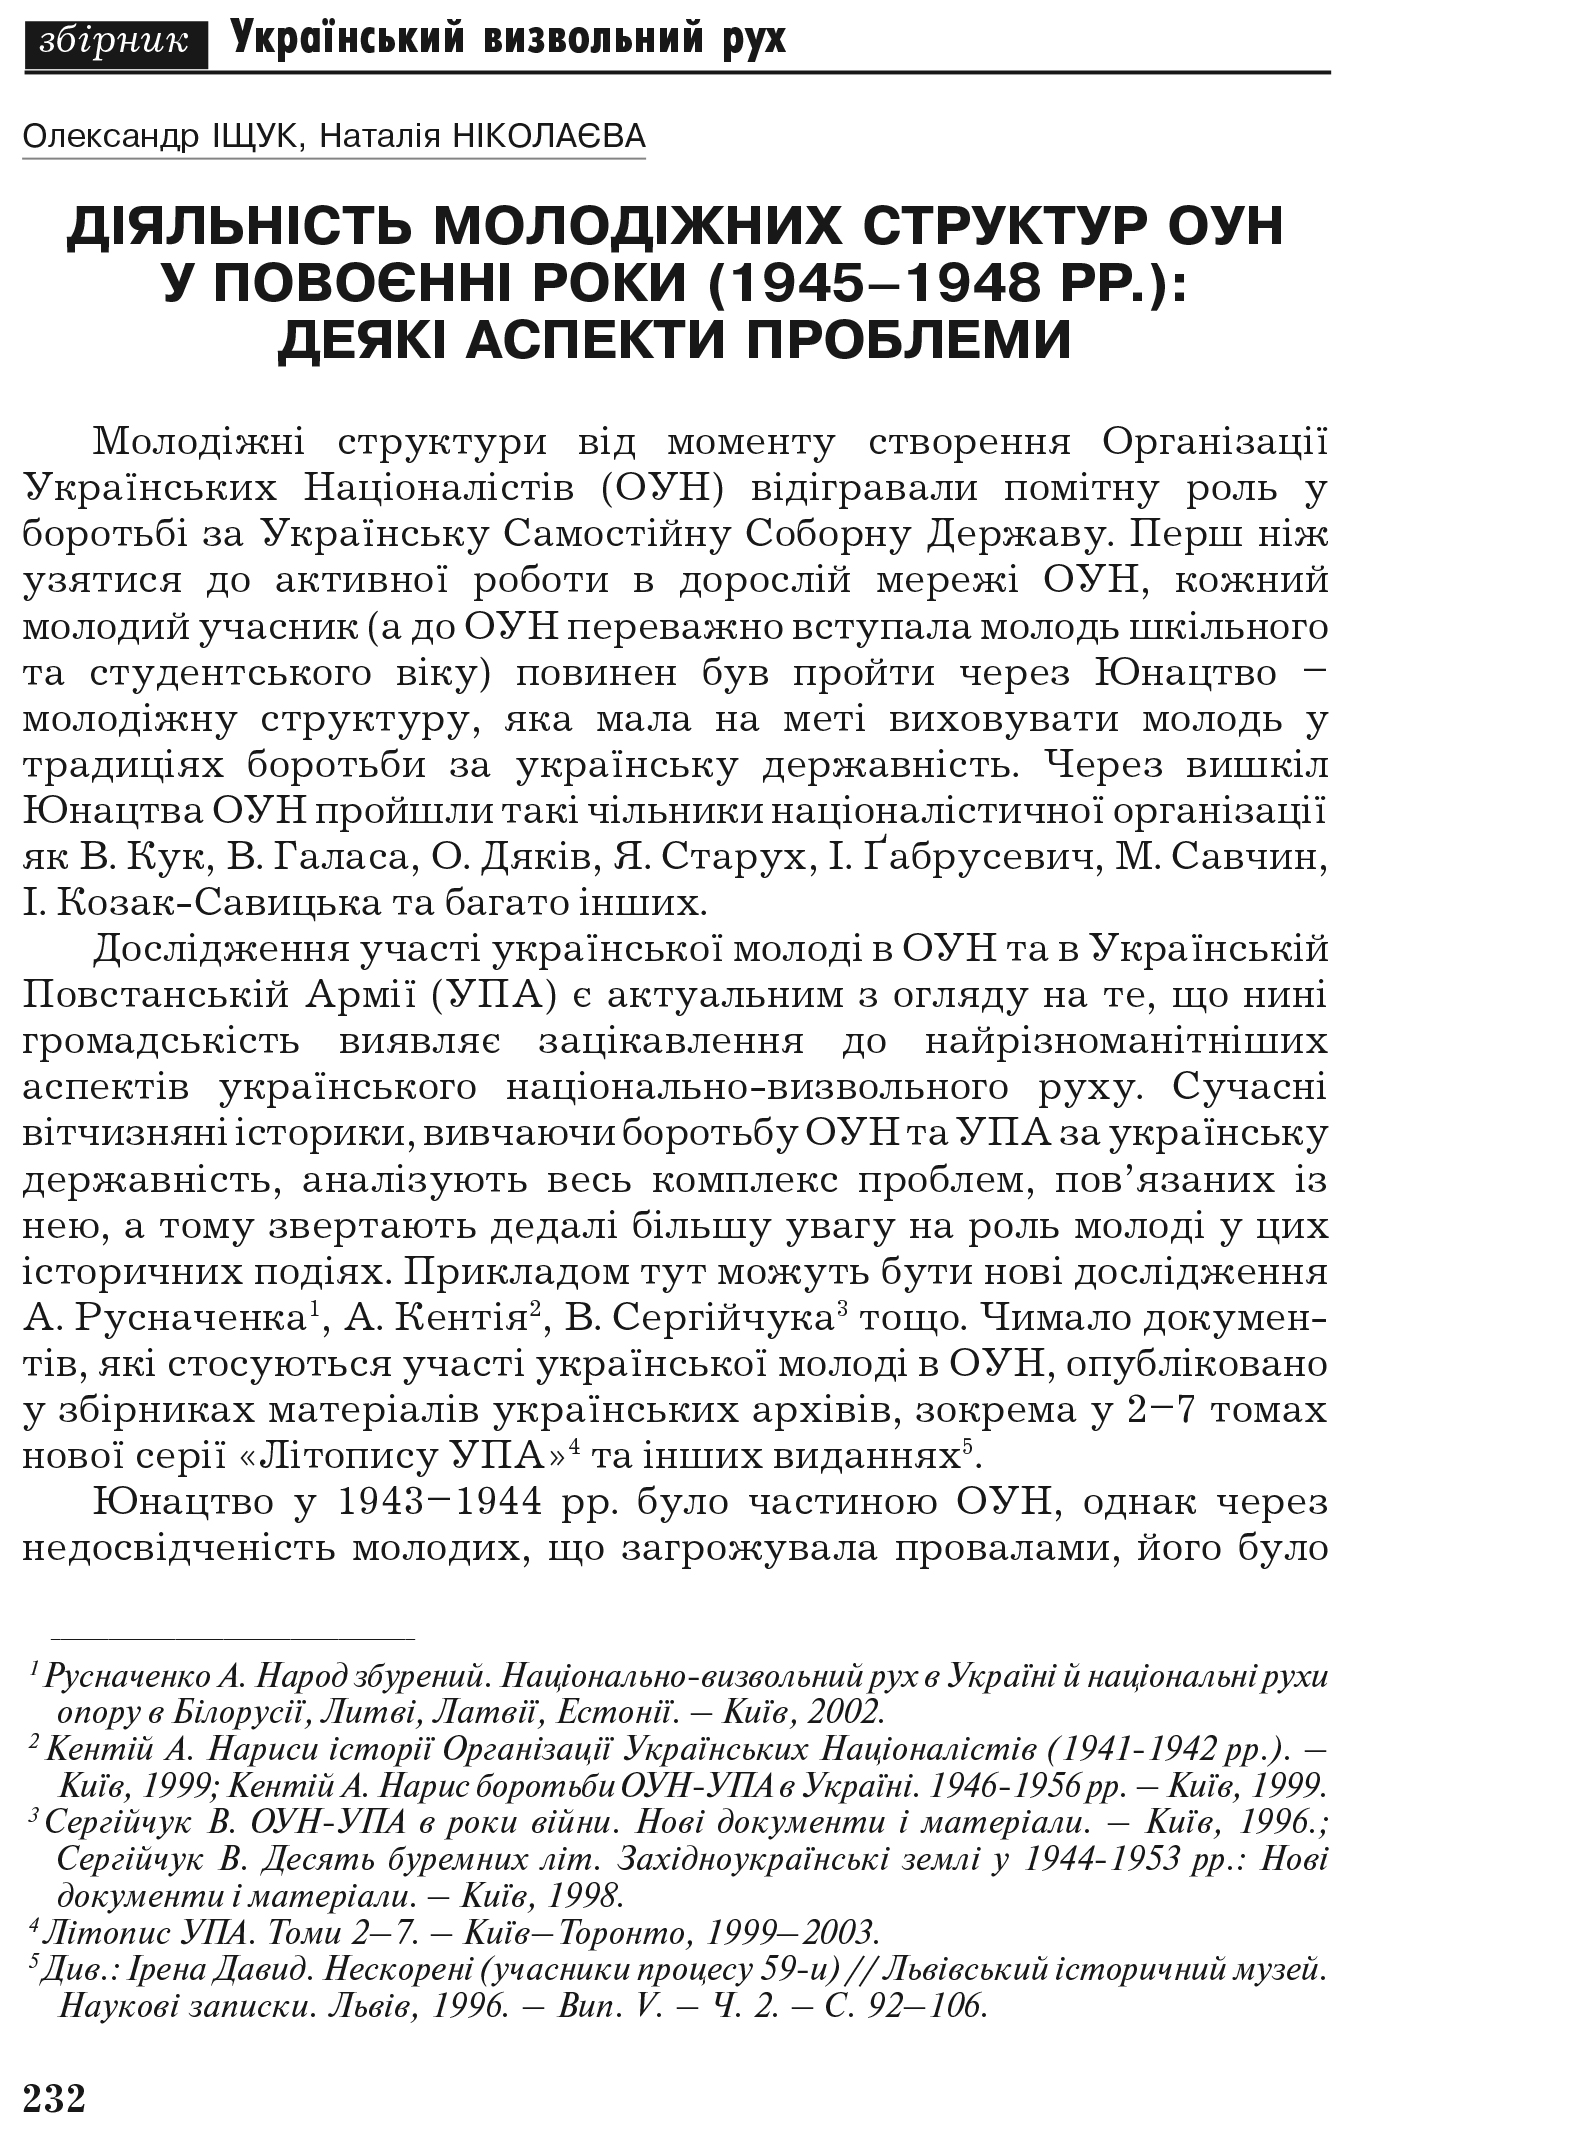 Український визвольний рух №7, ст. 232 - 242